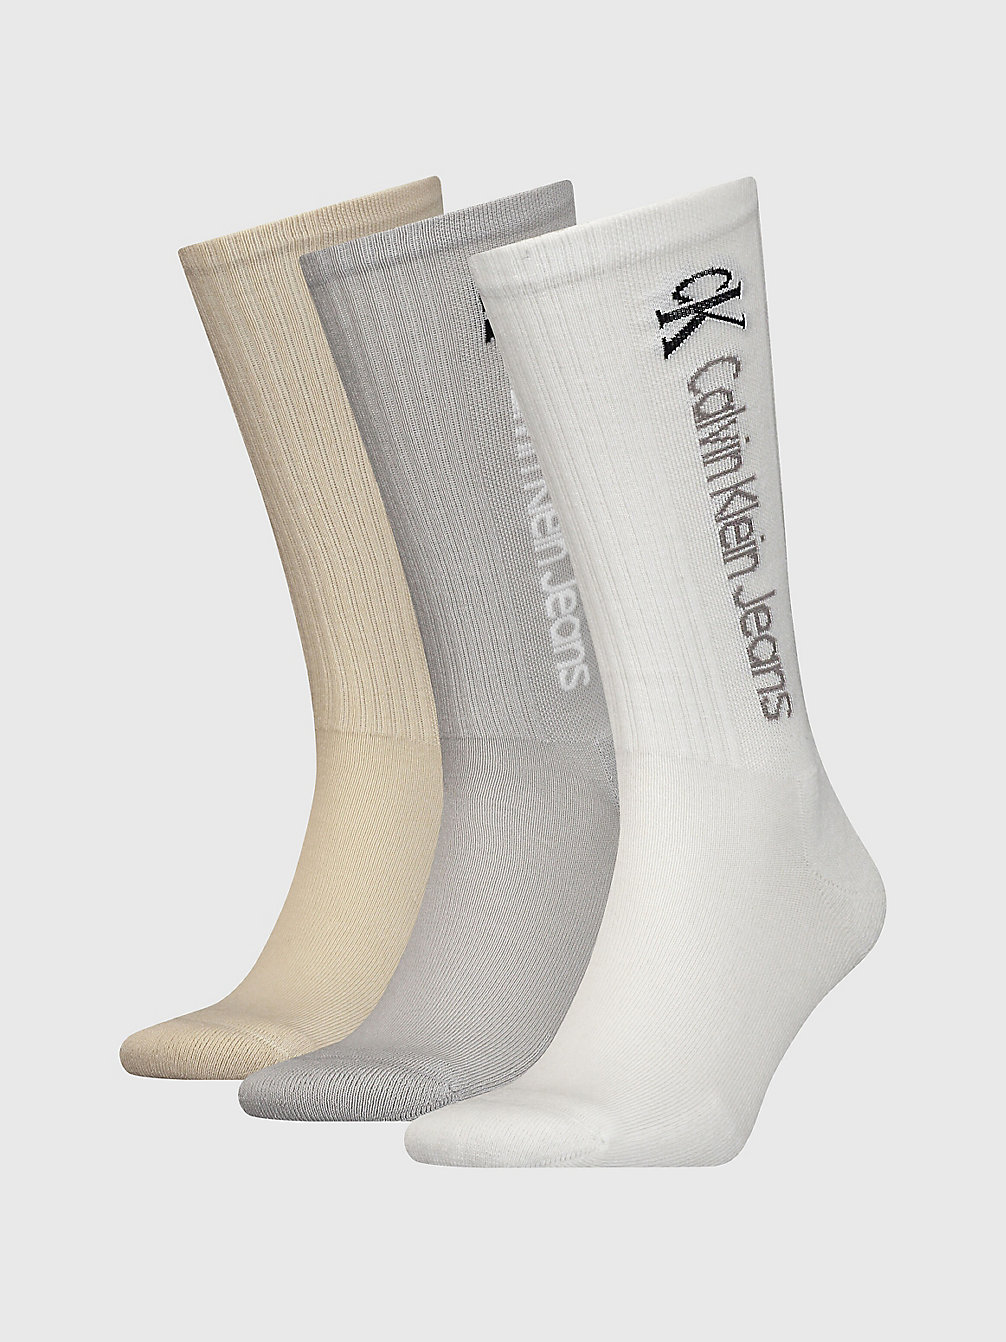 WHITE COMBO 3 Pack Vintage Crew Socks undefined men Calvin Klein